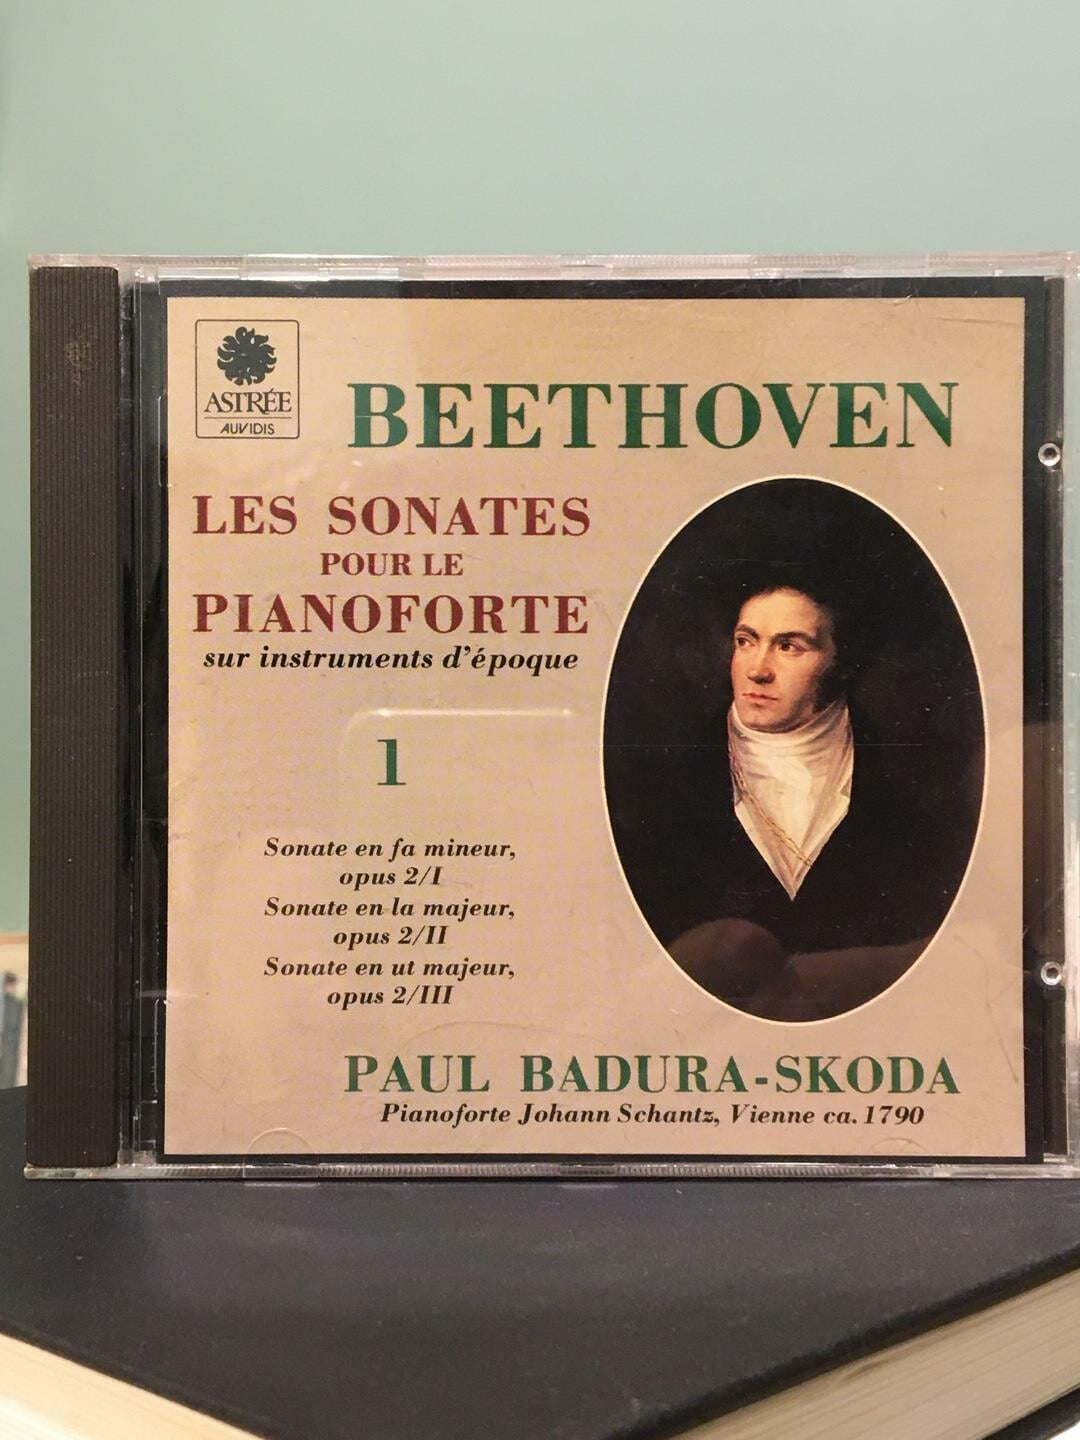 Beethoven: Les sonates pour le piano-forte sur instruments d‘epoque, Vol. 1